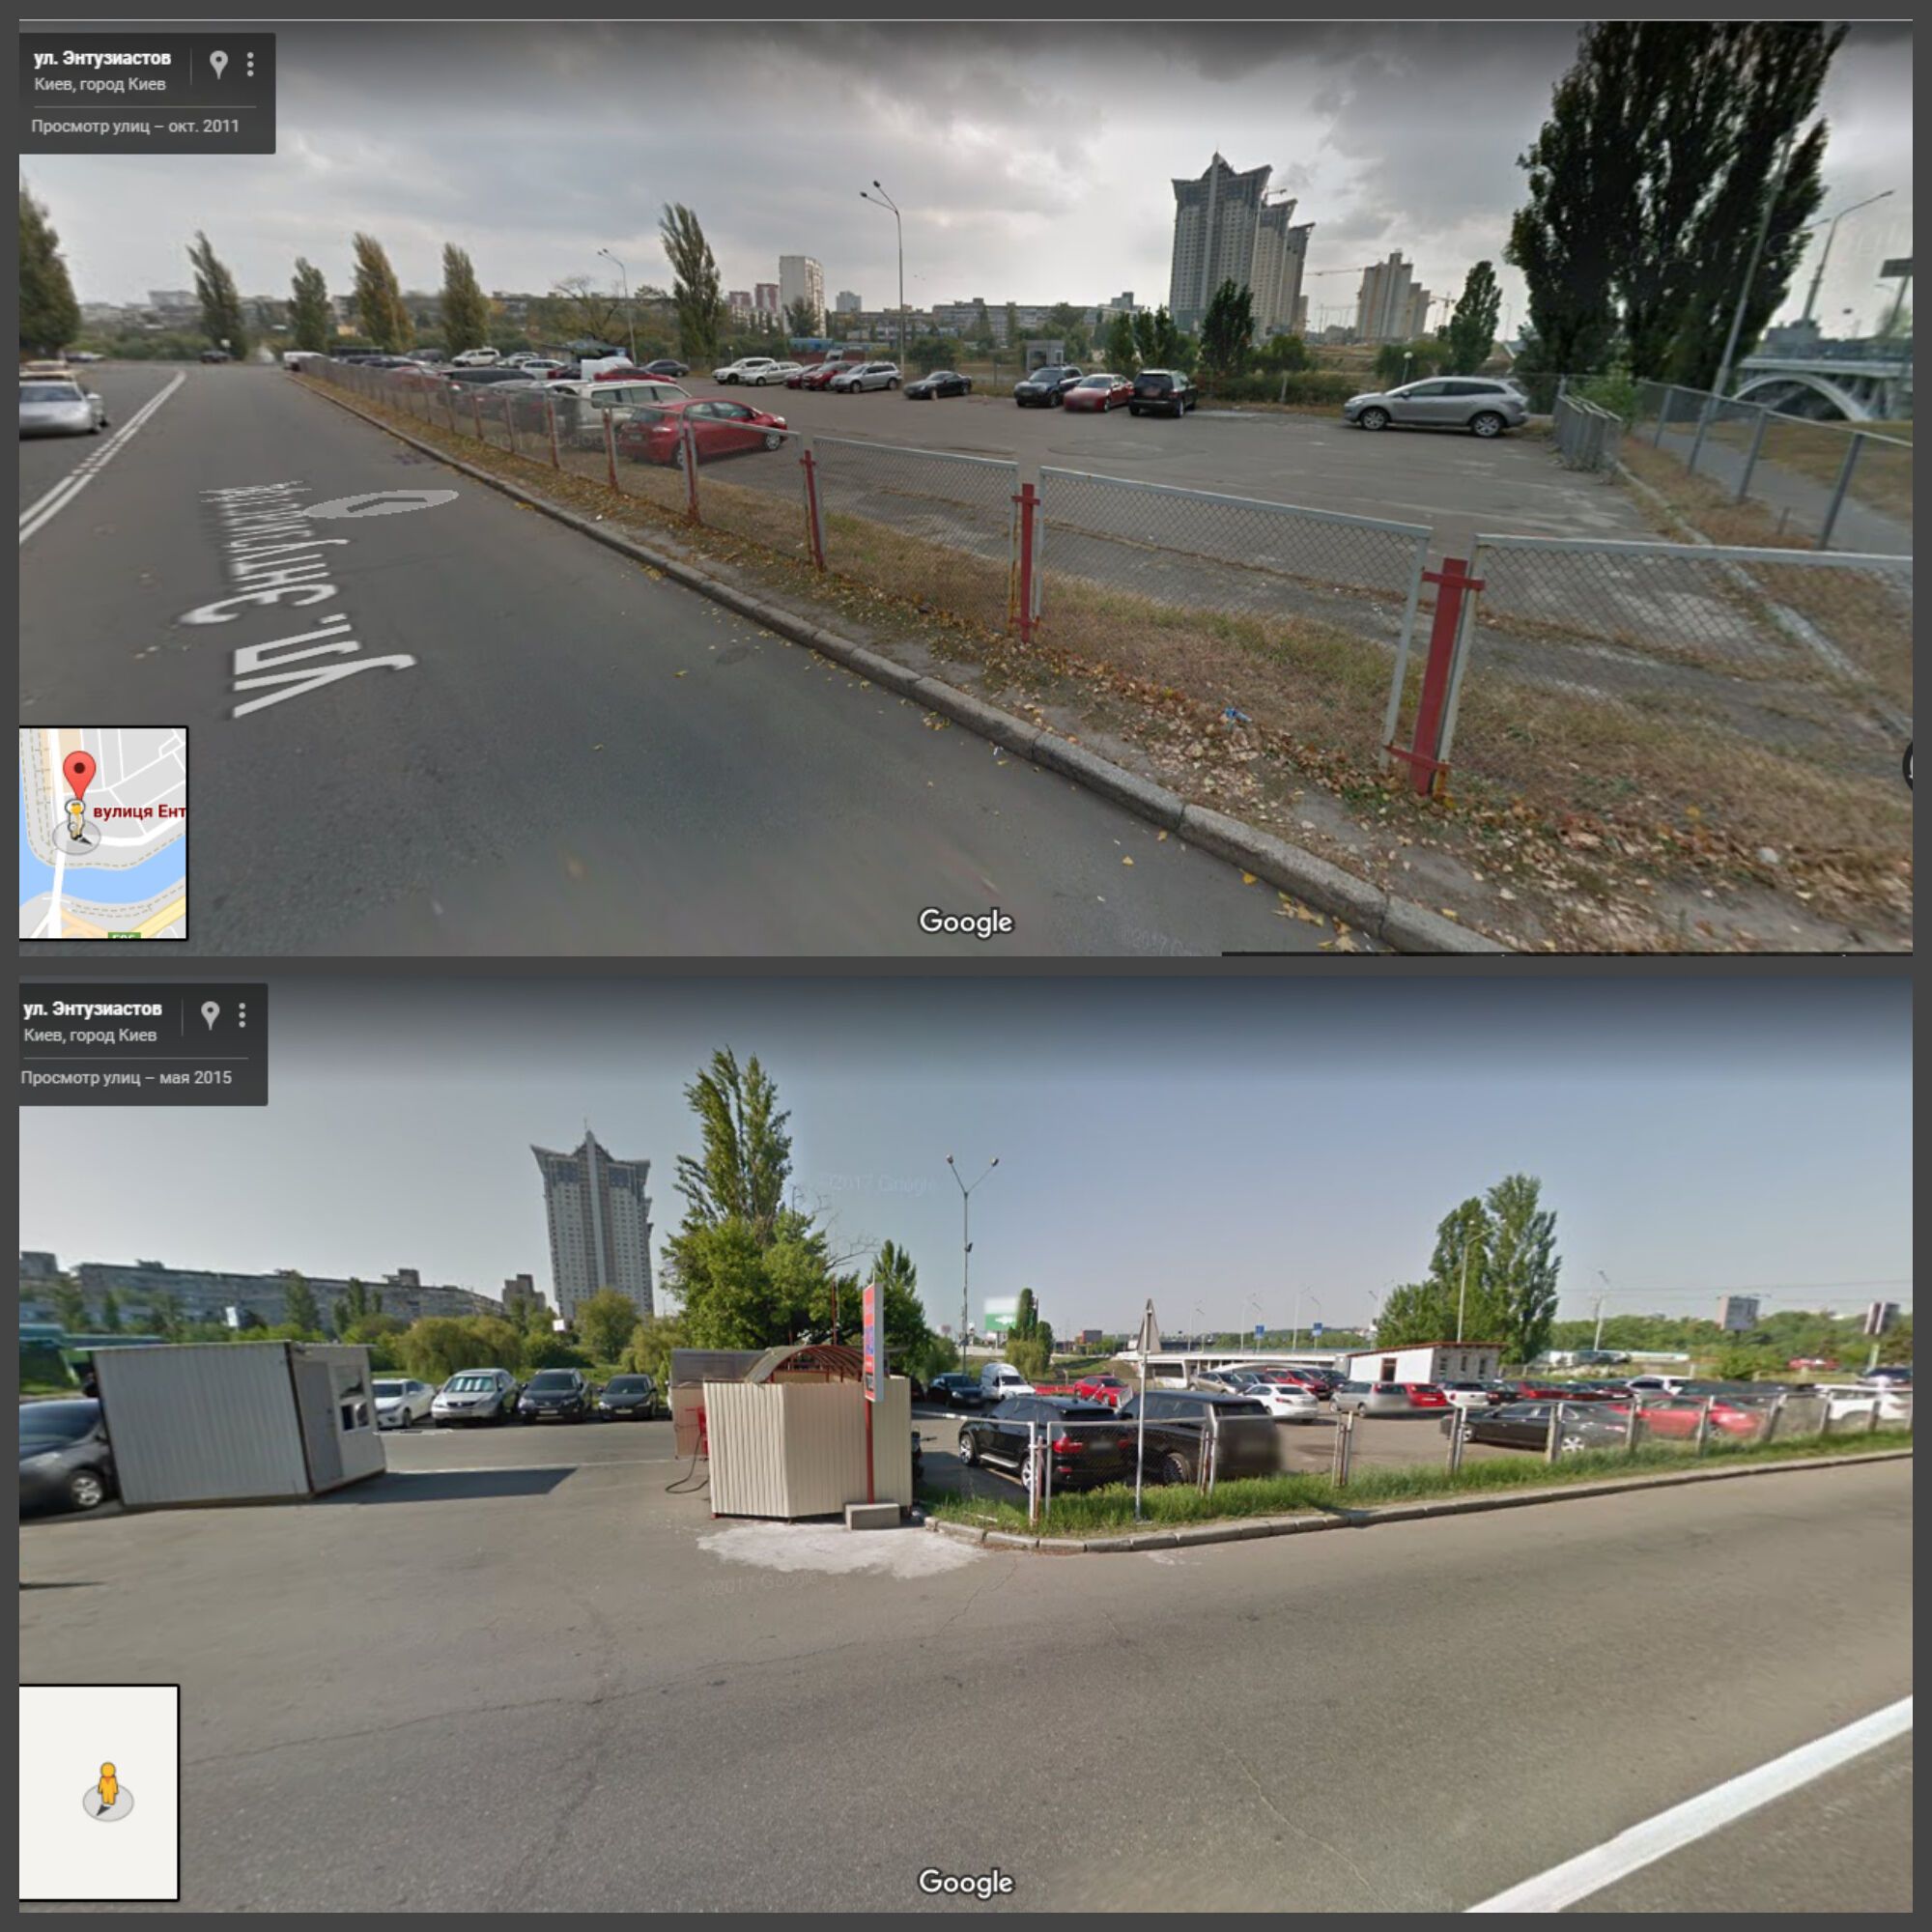 Снимки автостоянки при составлении Google Maps в 2011 г. (сверху) и 2015 г. (снизу)